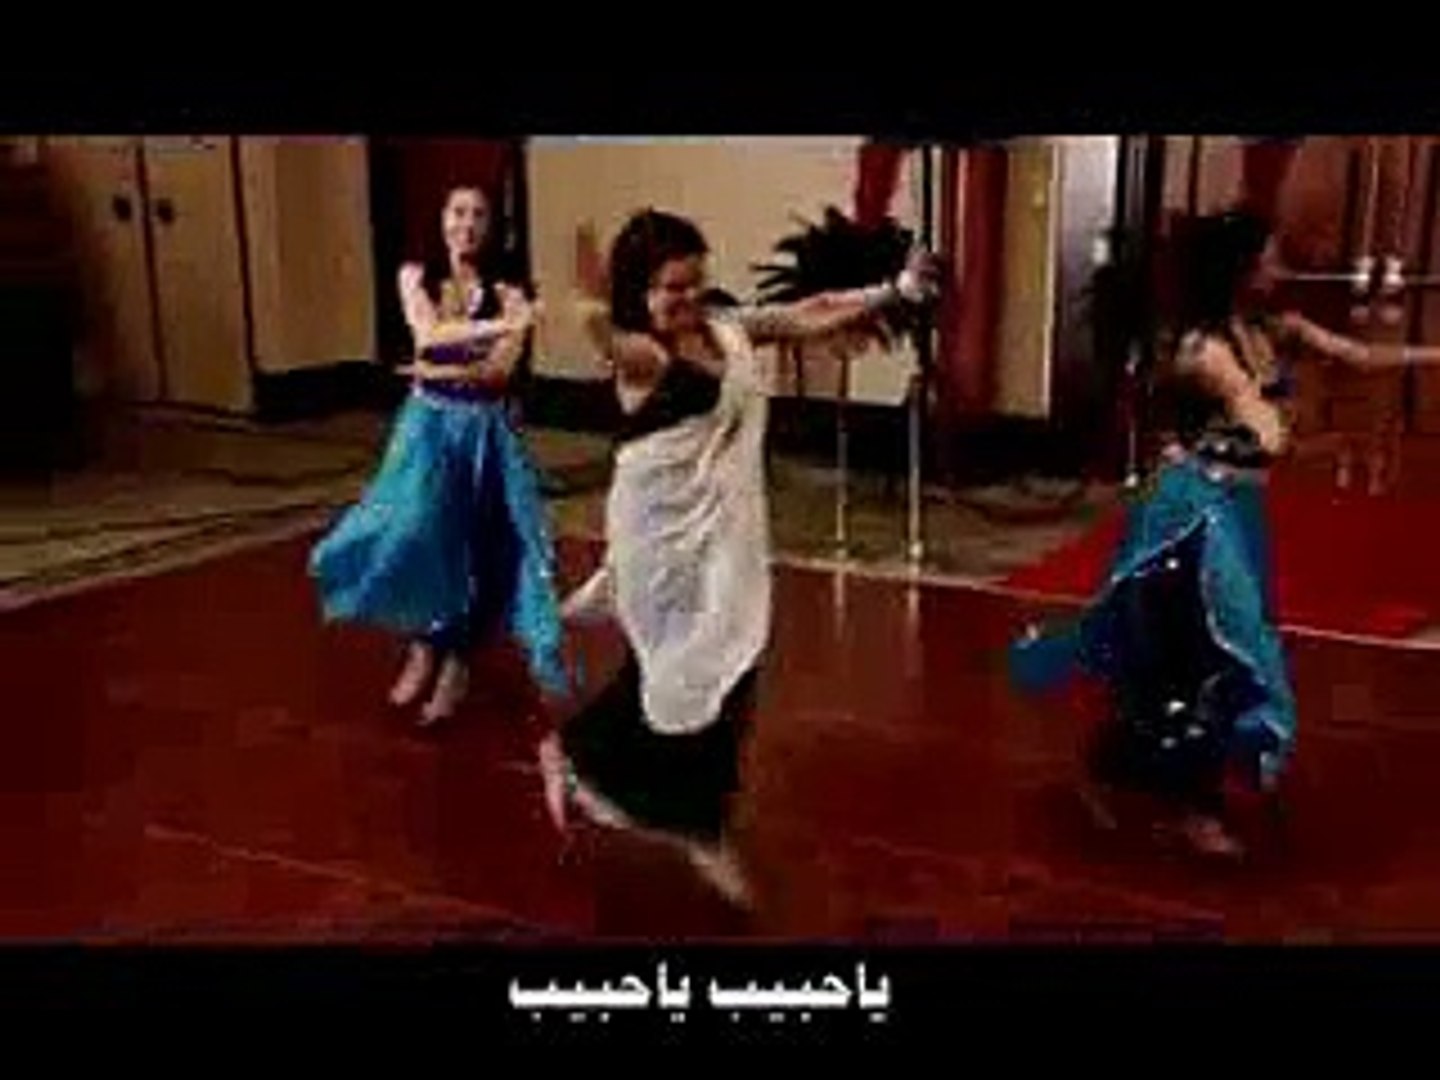 احلا رقص على اغنية يمنية روعة بصوت الفنانة اليهودية شمعة مالسبب - video  Dailymotion